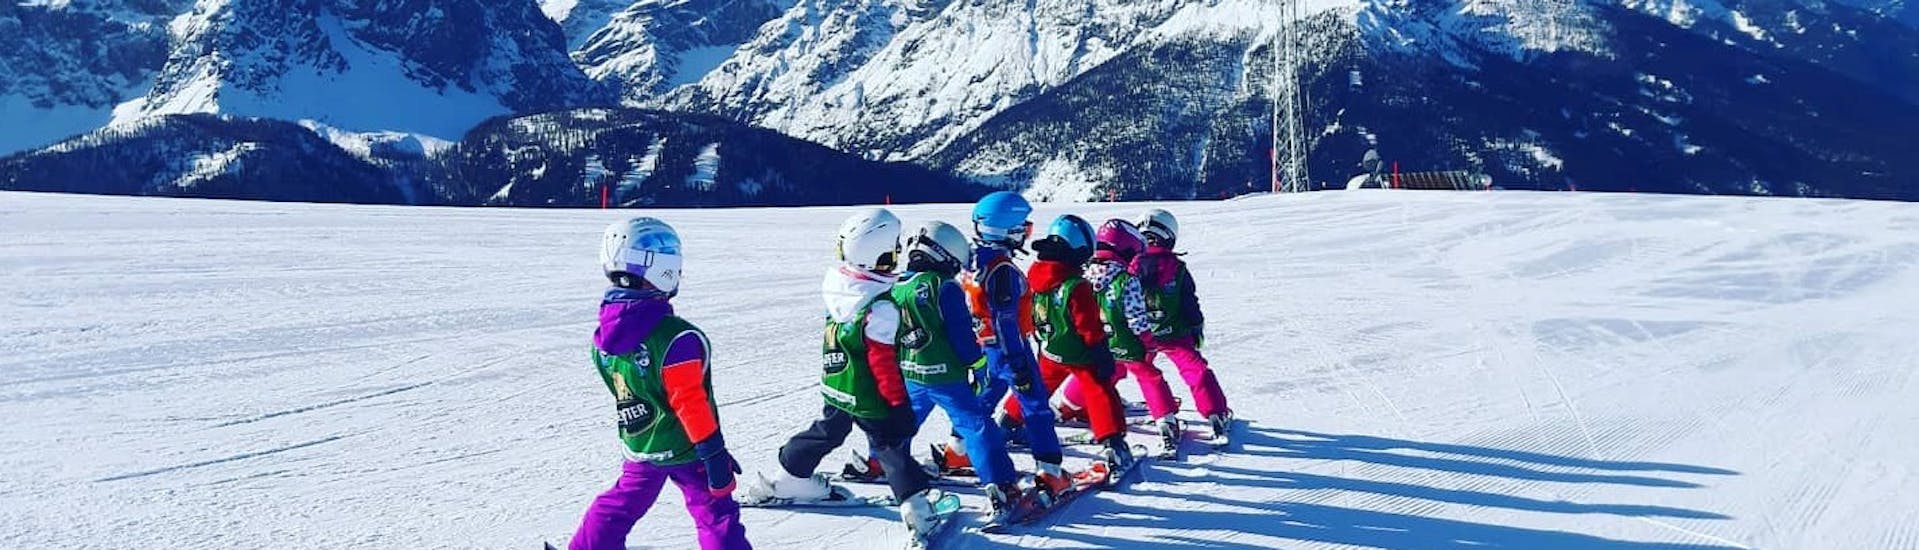 Bambini in attesa di eseguire uno degli esercizi durante una delle lezioni di sci per bambini a tutti i livelli a Monte Elmo.